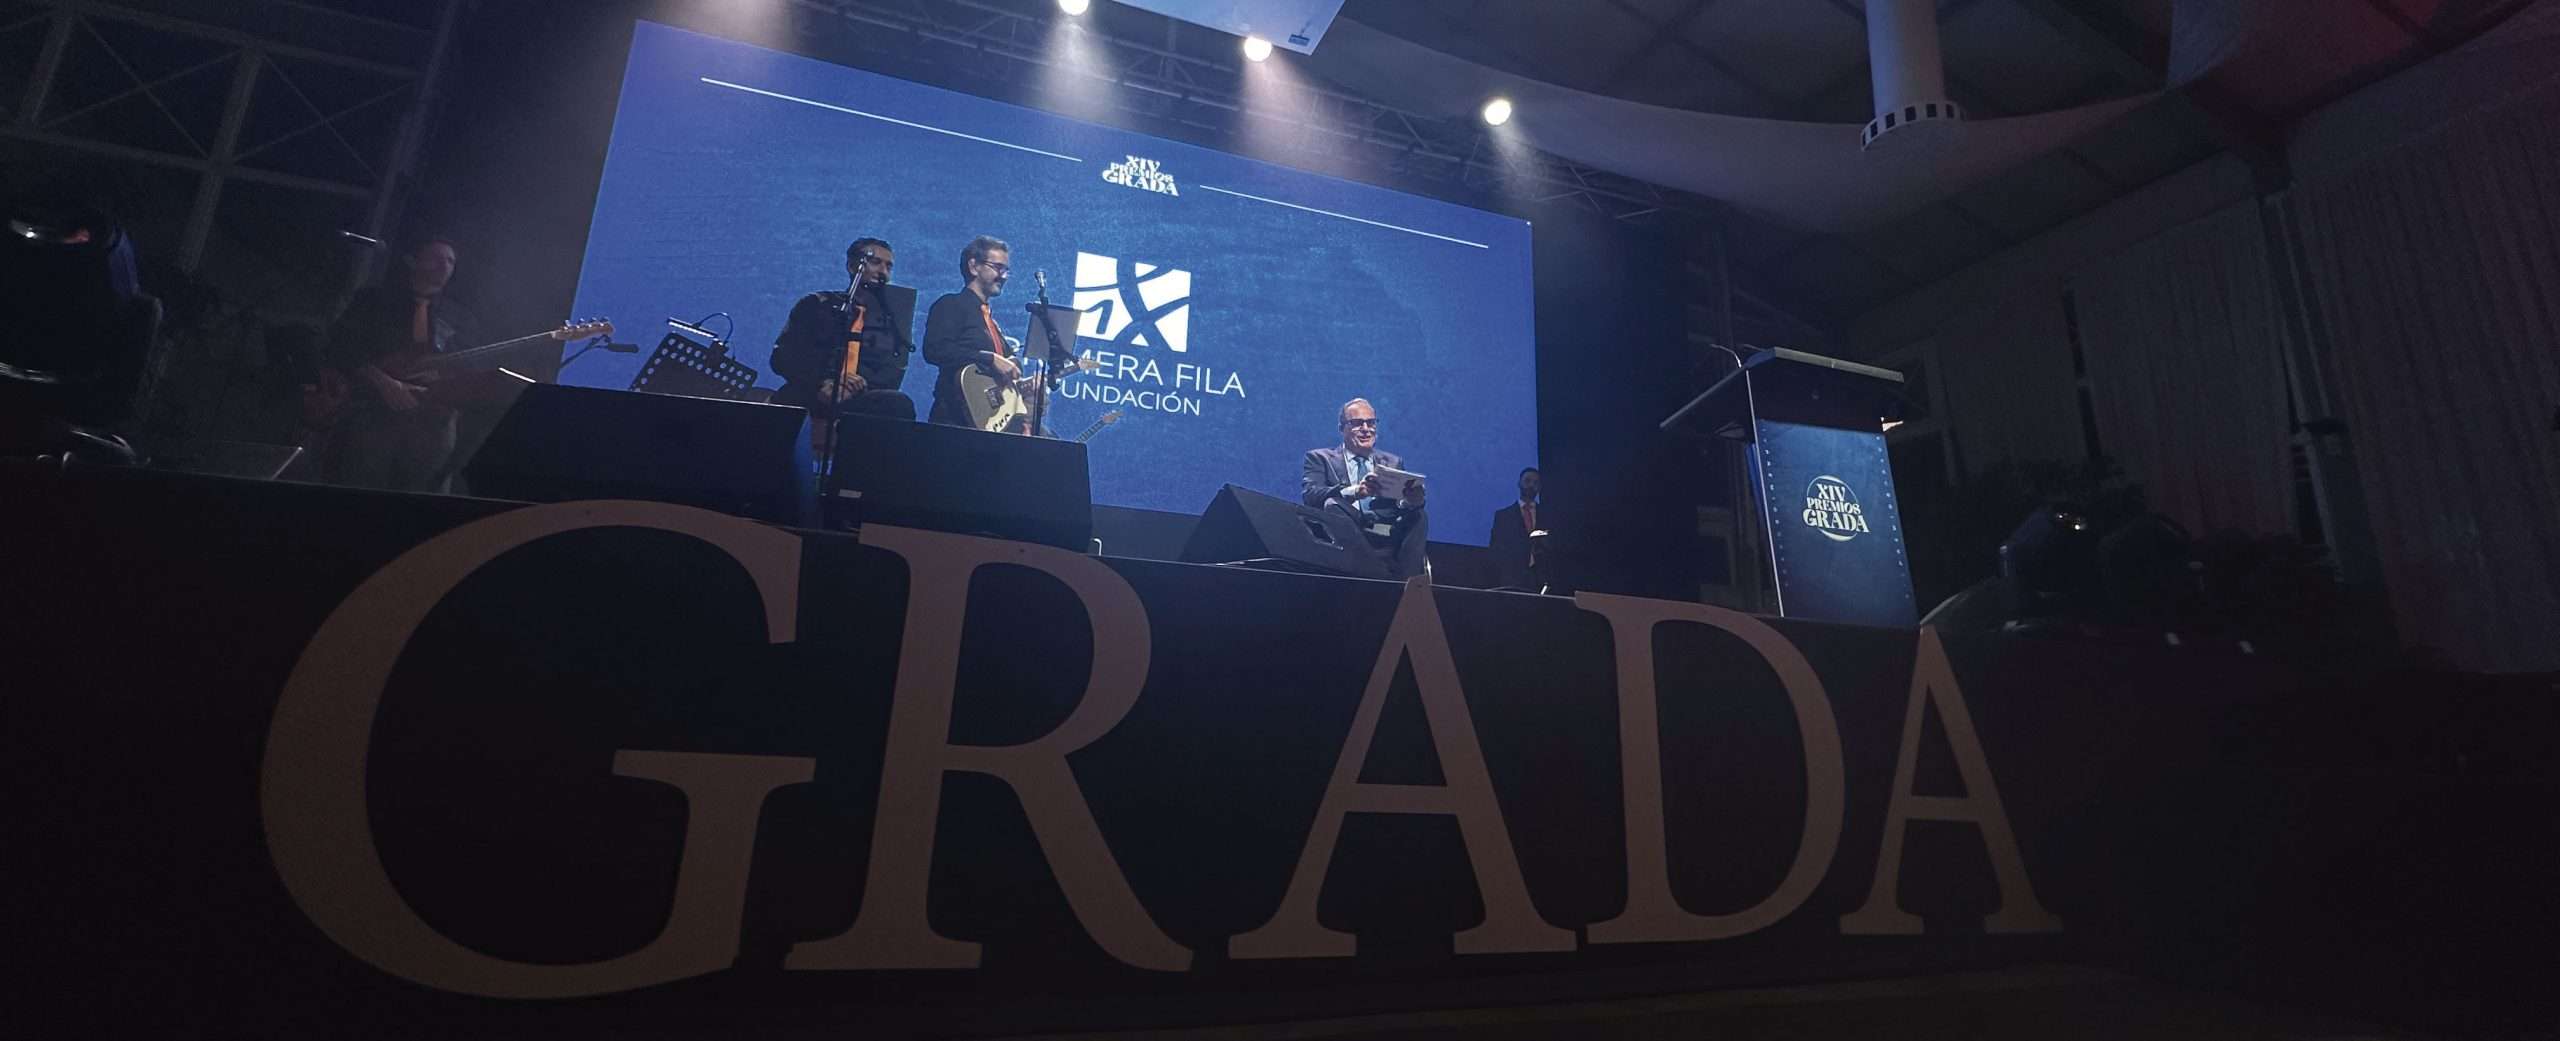 Los XIV Premios Grada ponen en valor lo mejor de Extremadura